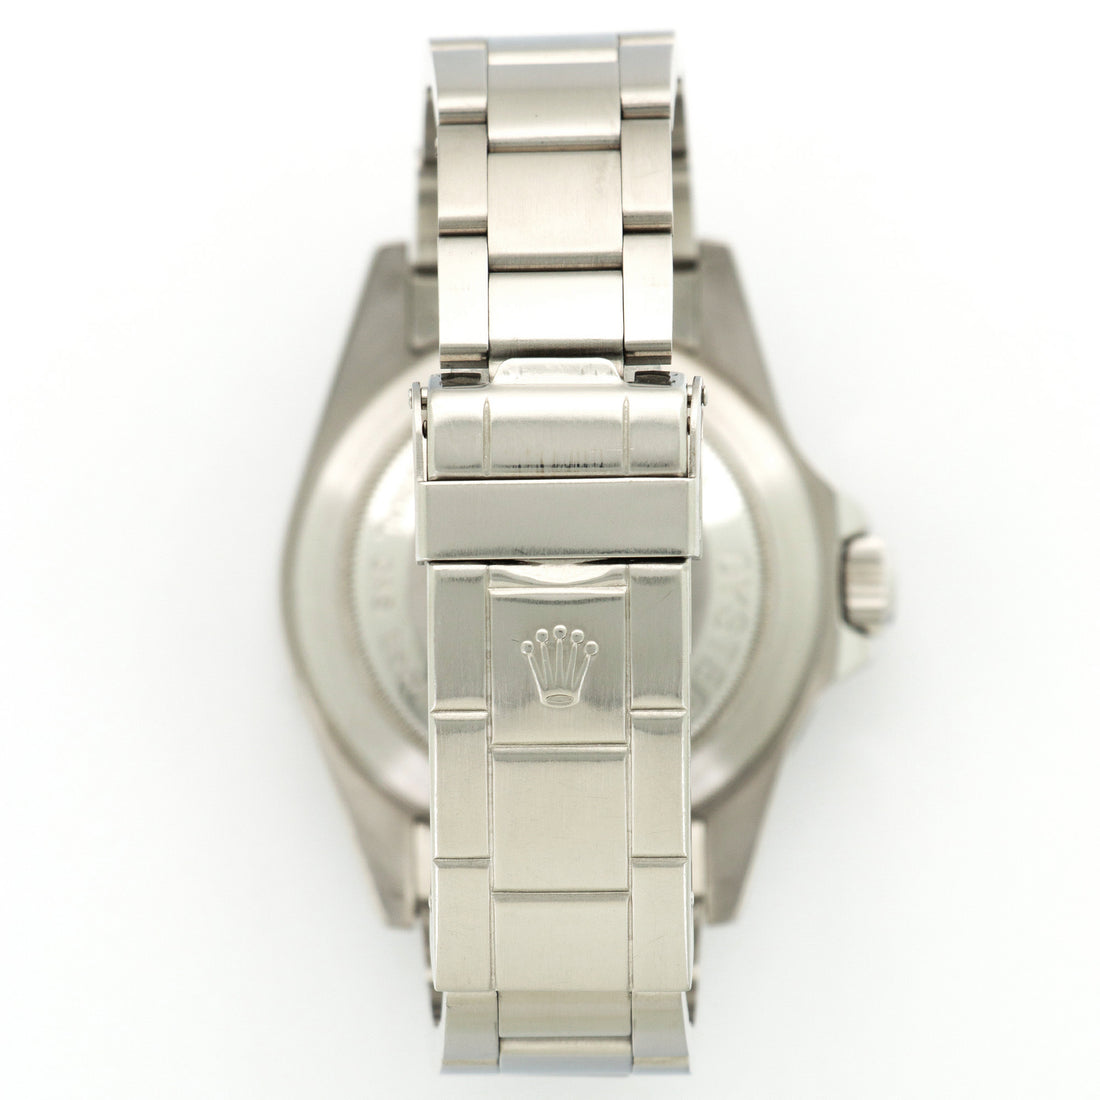 Rolex Sea-Dweller Watch, Ref. 16660 Retailed by Tiffany & Co.